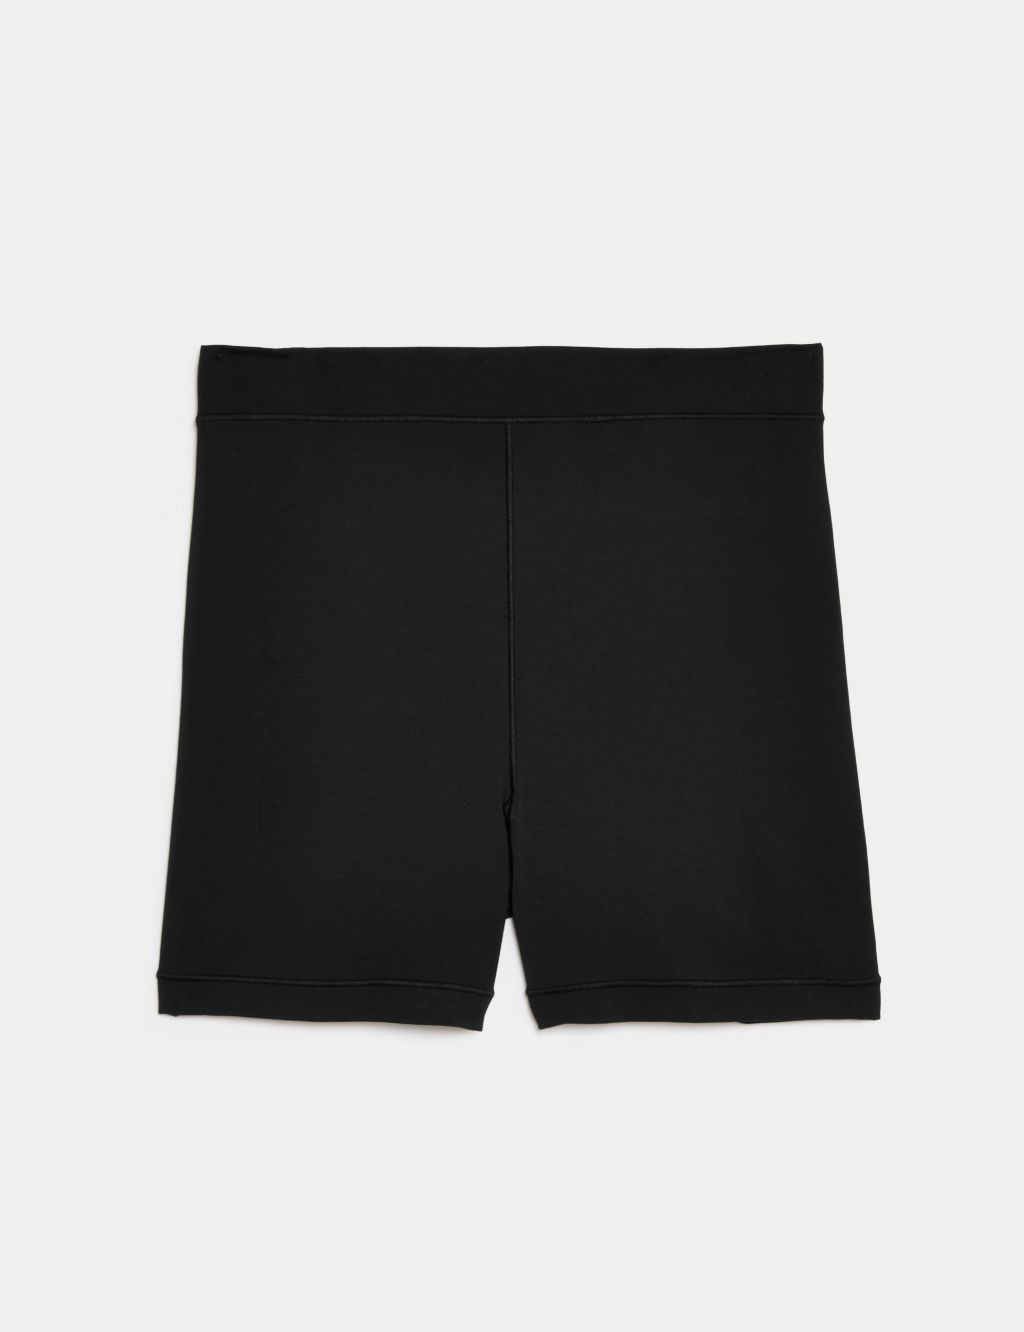 Flexifit™ High Rise Sleep Knicker Shorts 1 of 5